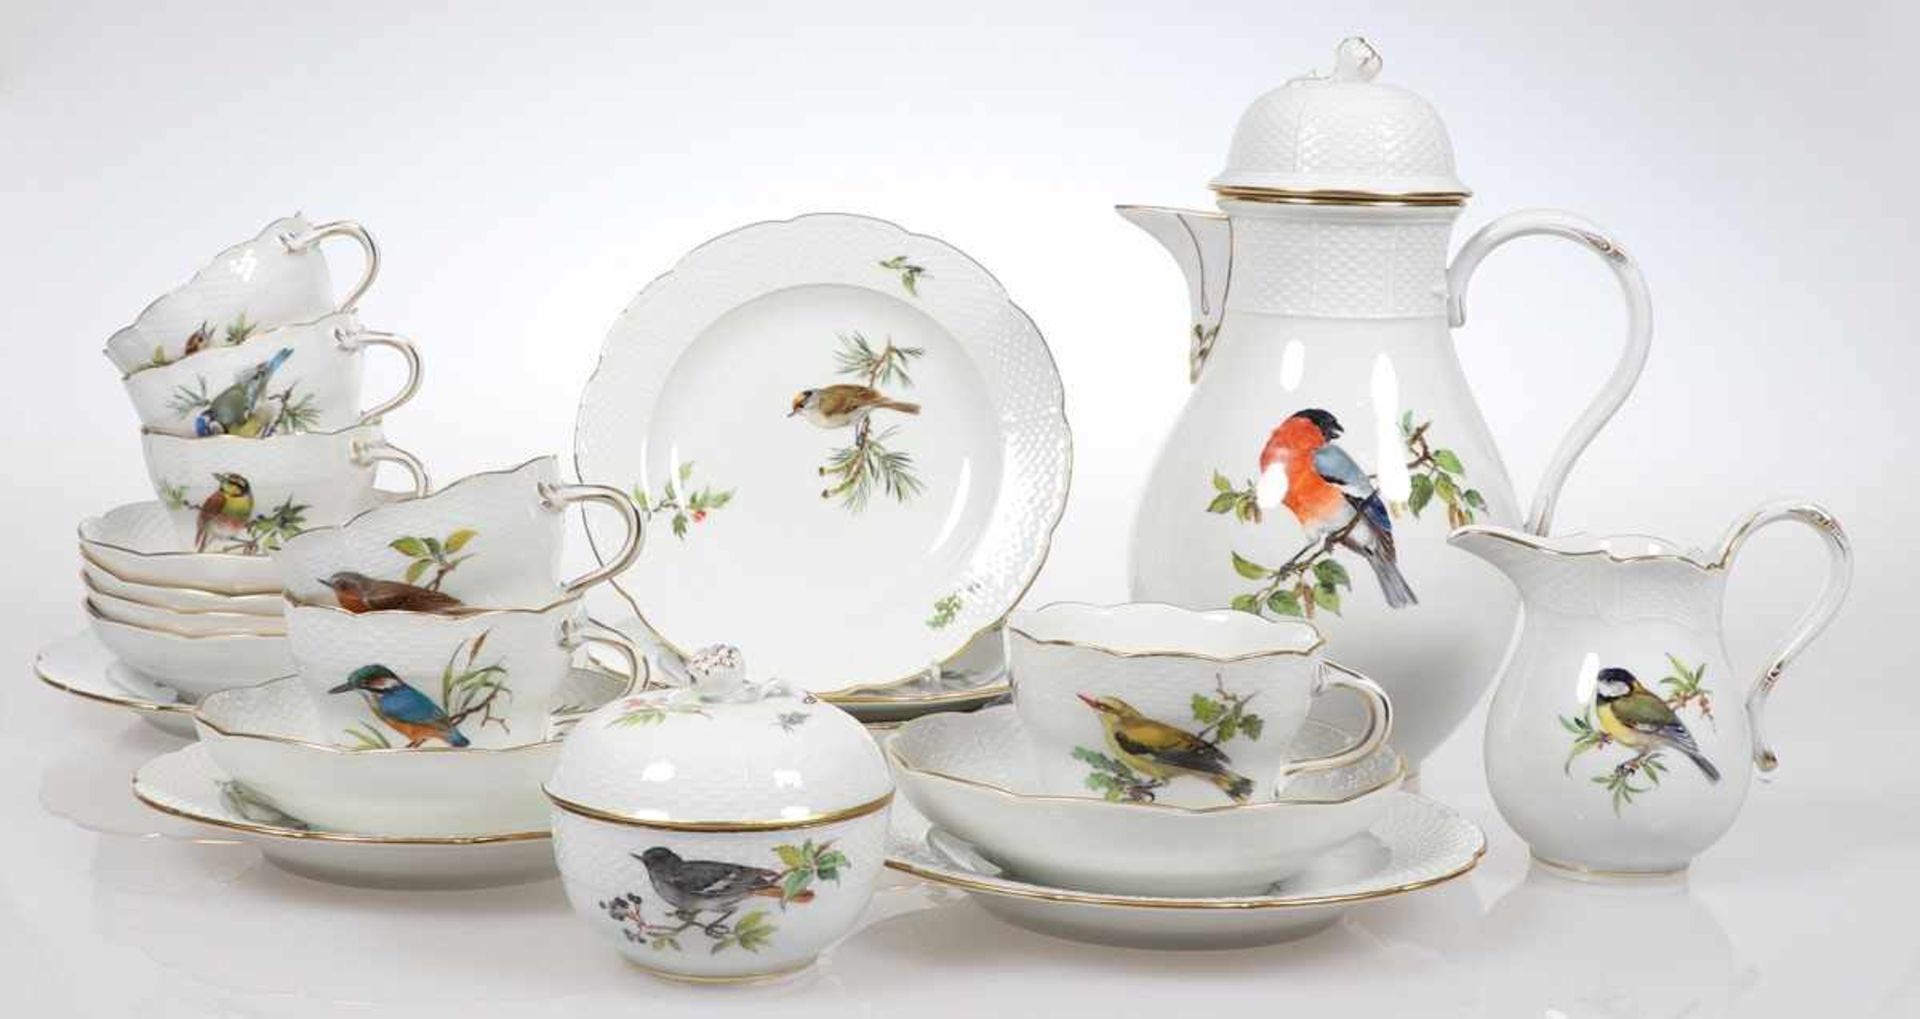 21tlg. KaffeeserviceStaatliche Porzellan Manufaktur, Meissen 1957-1972. - Altozier: Vogelmalerei: